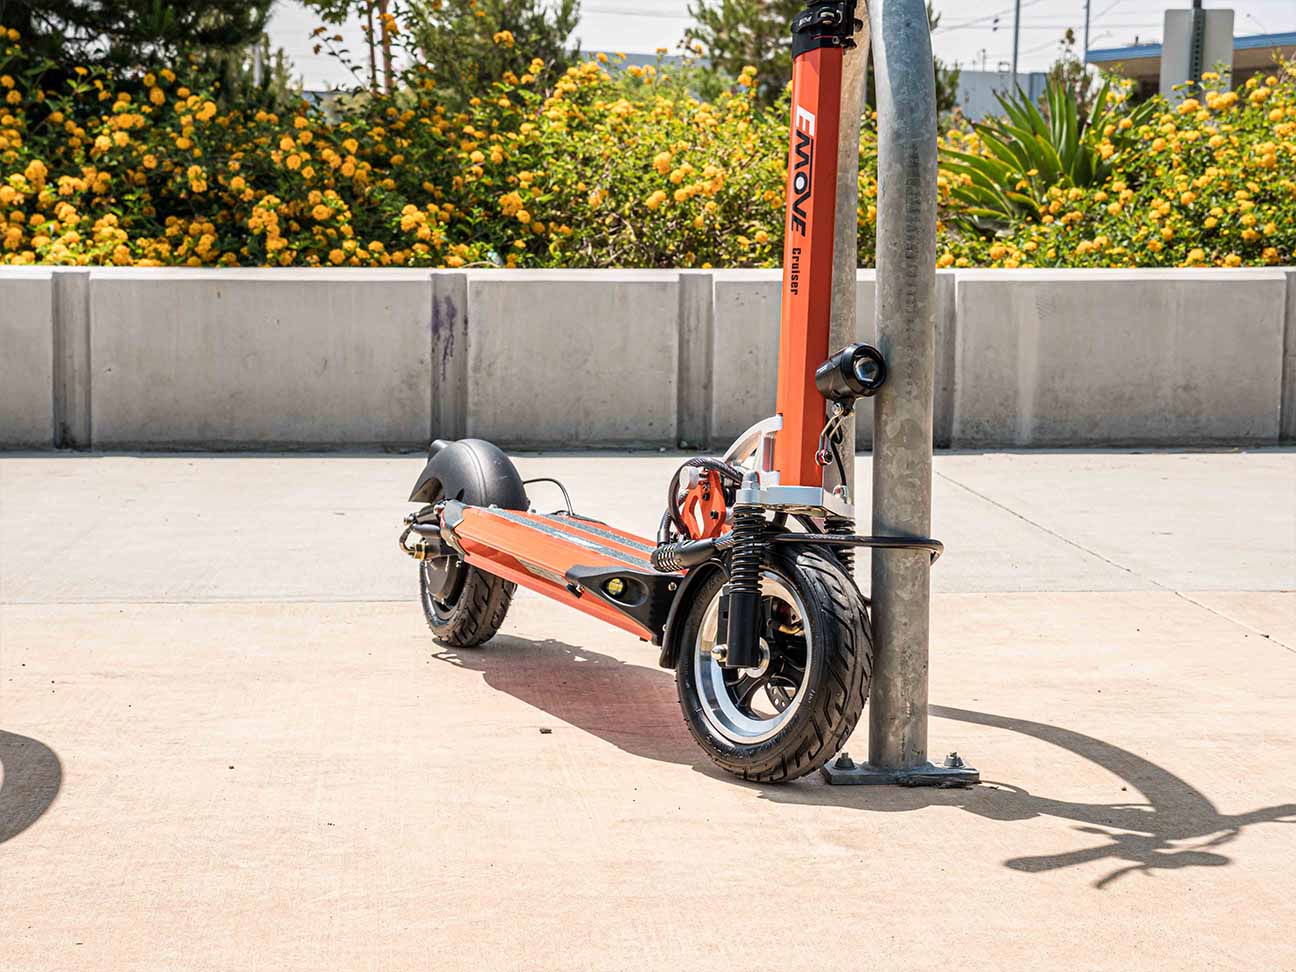 Los 5 mejores candados para scooters eléctricos: seguridad para scooters -  VORO MOTORS